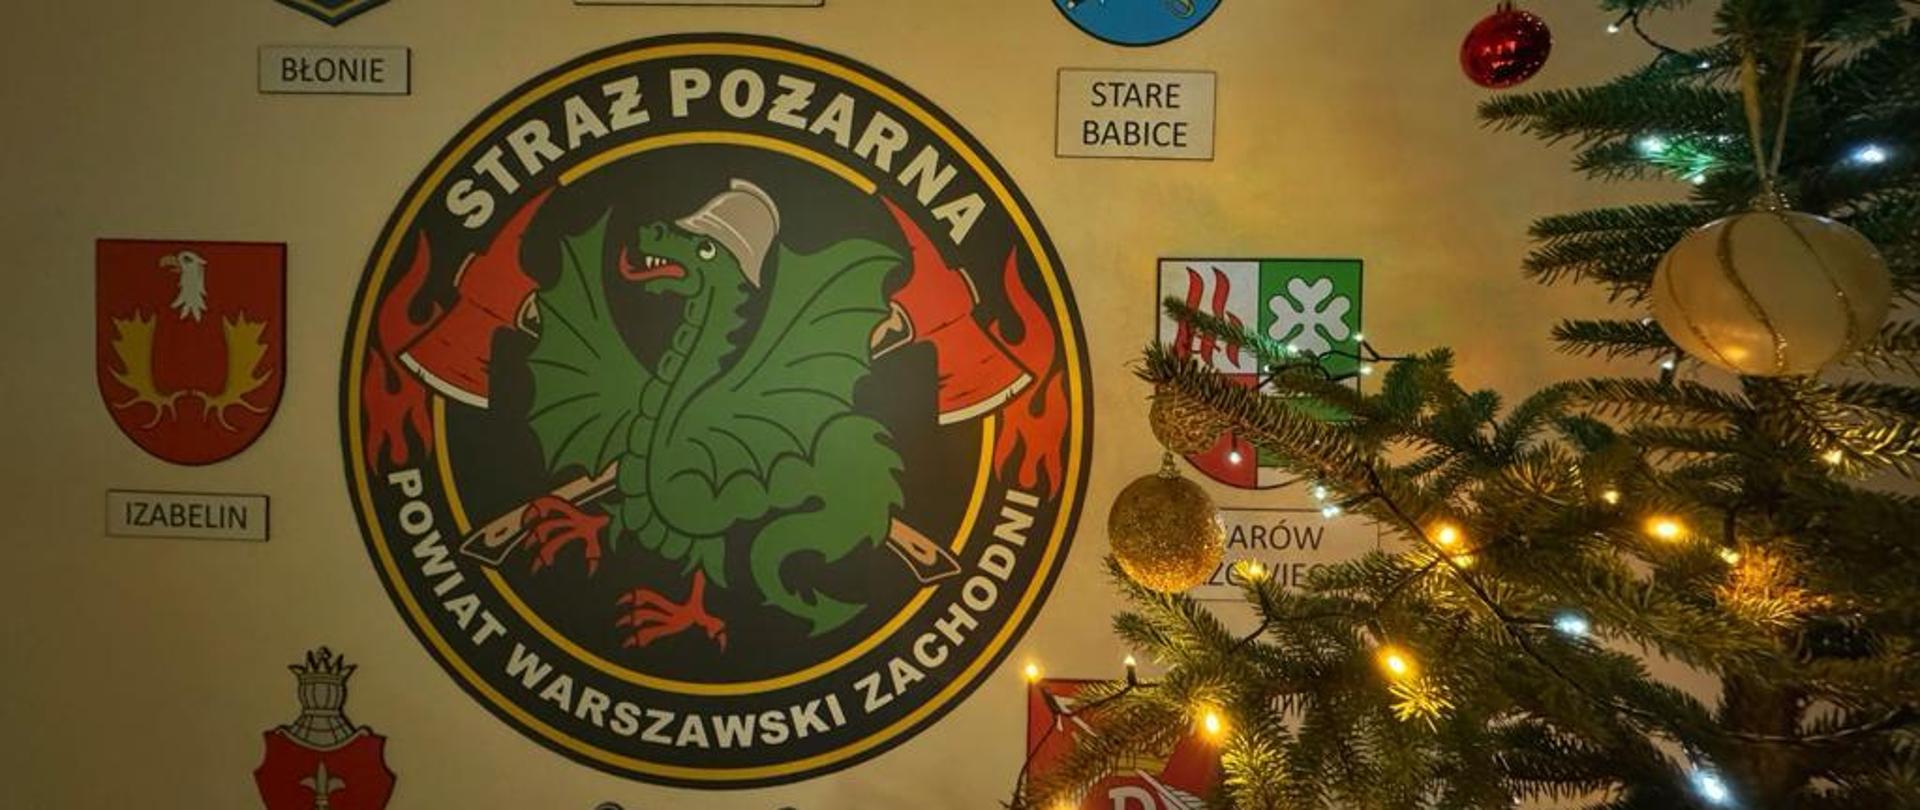 Życzenia Bożonarodzeniowe Komendanta Powiatowego PSP w Powiecie Warszawskim Zachodnim